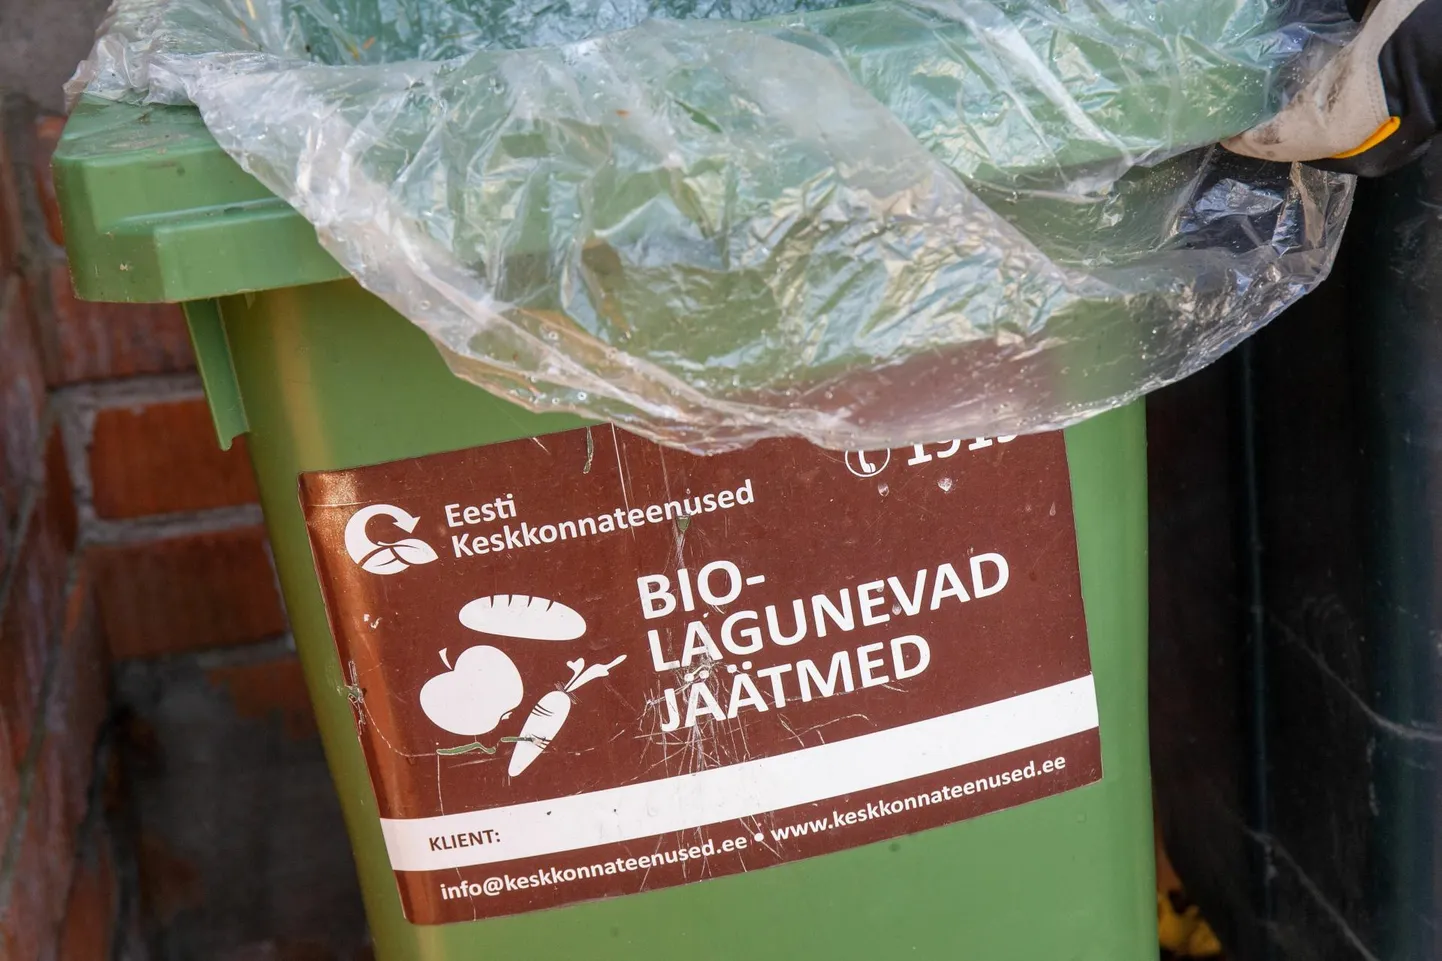 Biolagunevate jäätmete konteiner.